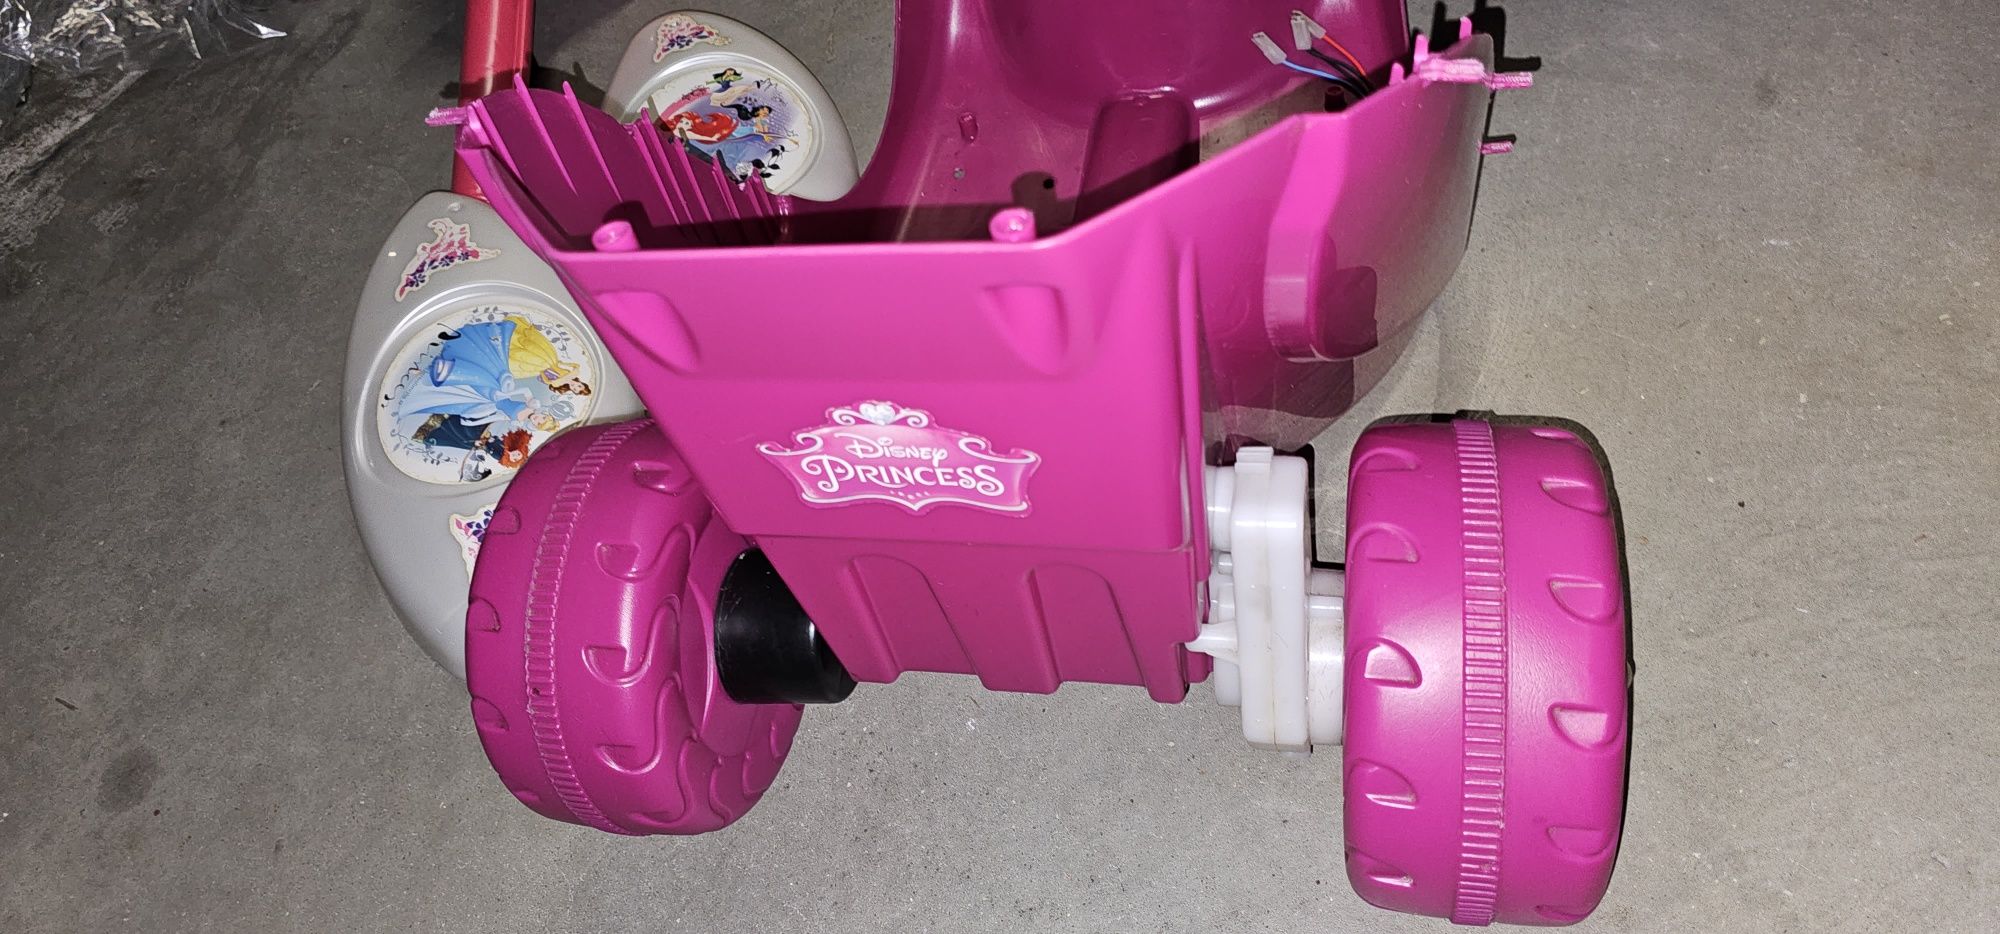 Moto triciclo Princesas Disney usada